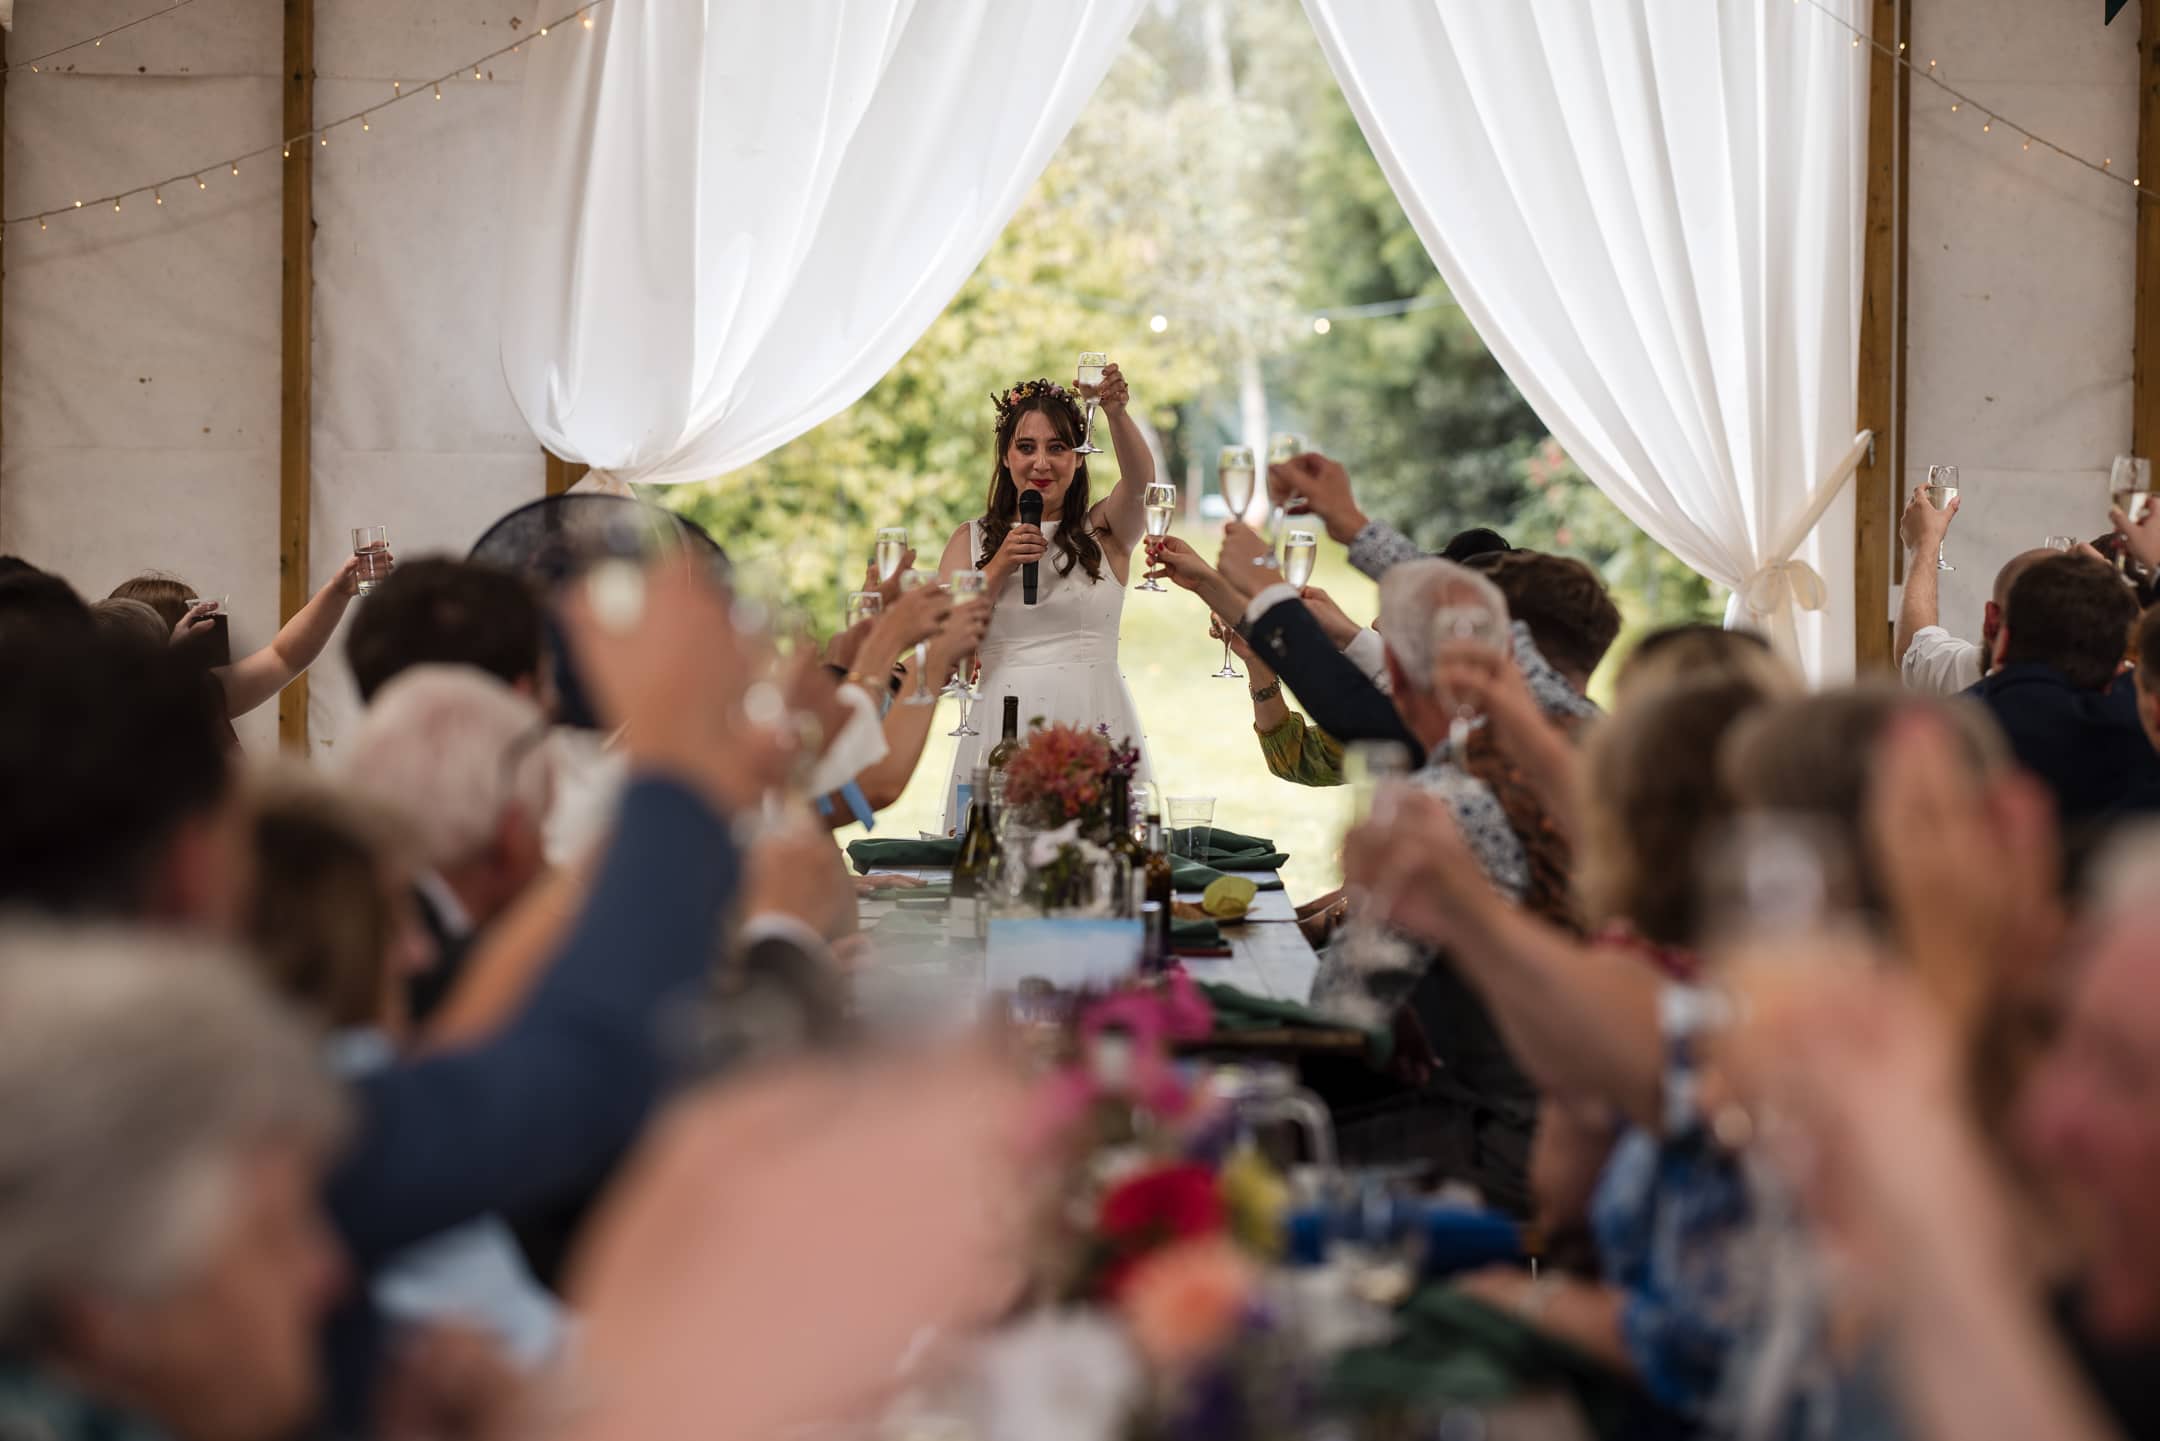 Bride raising glass during speech